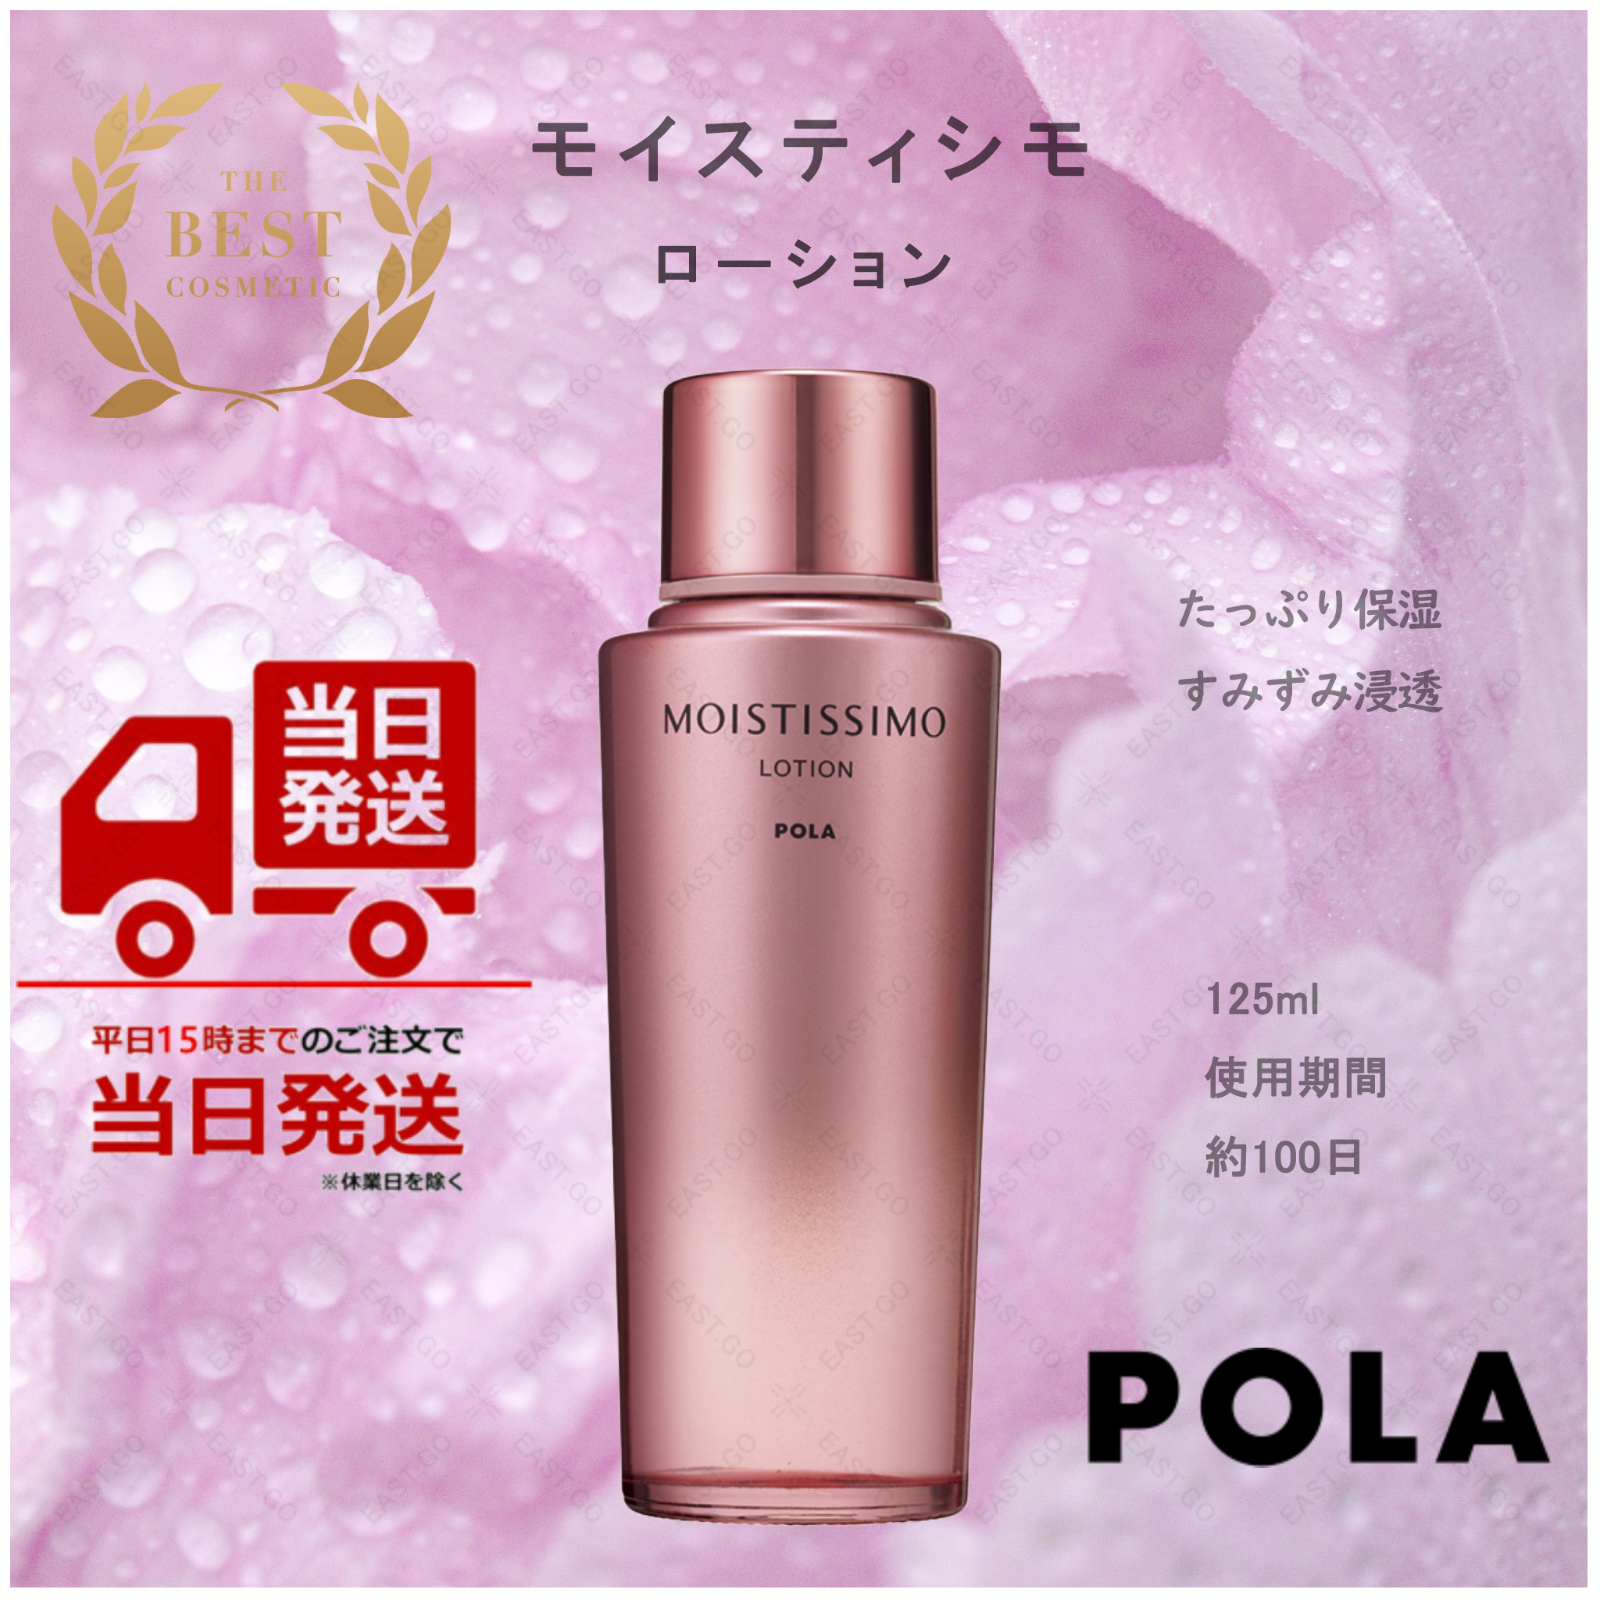 POLA MOISTISSIMO（モイスティシモ ）化粧水、ローションミルク